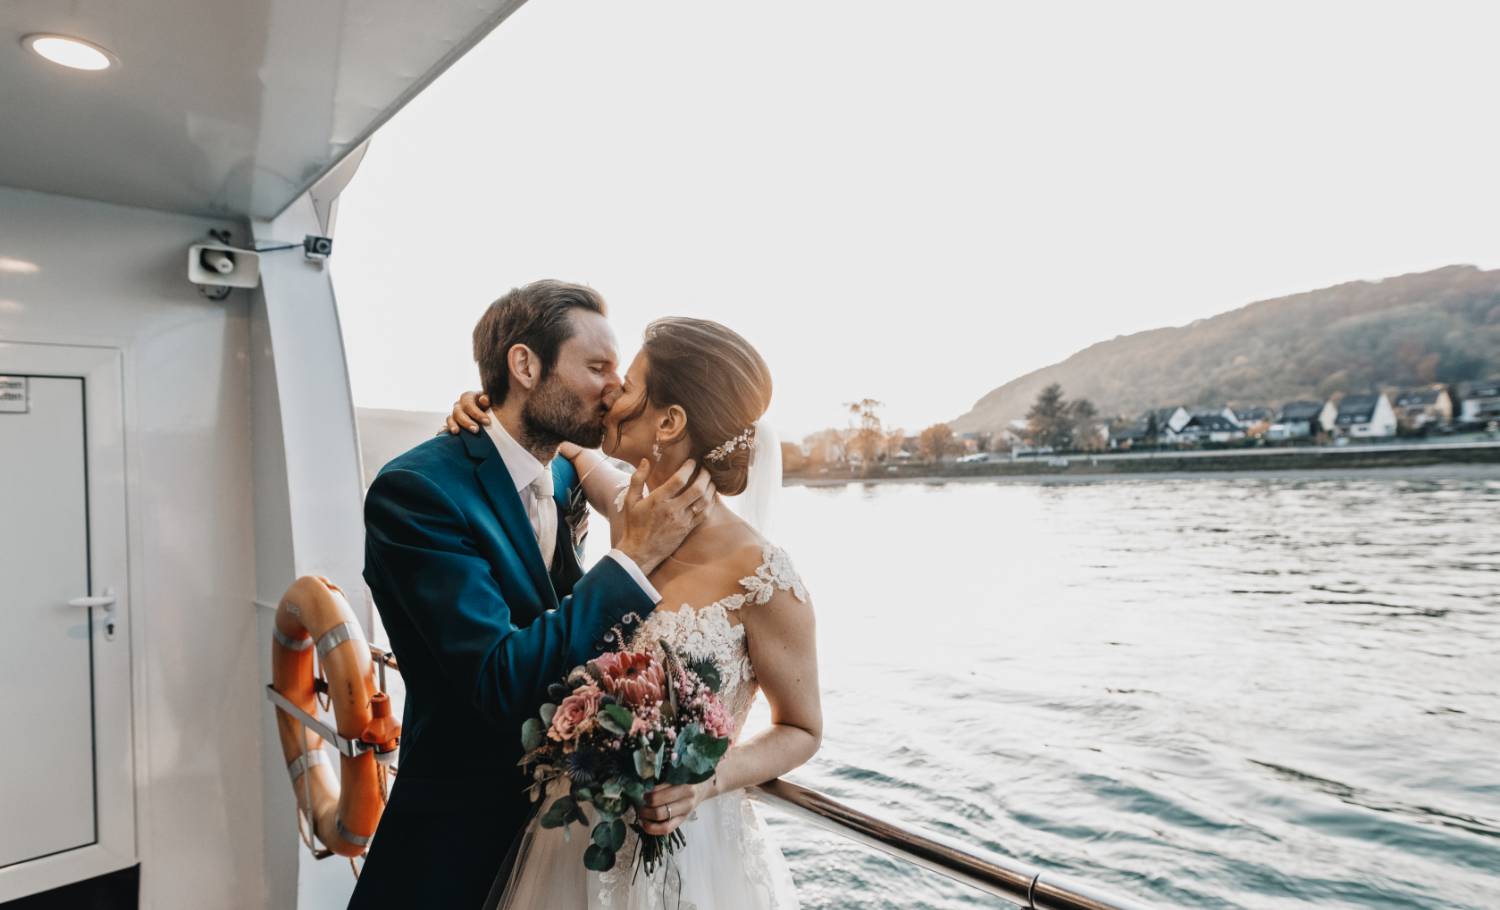 Doreen Kühr / Hochzeitsfotografie und Paarfotografie / Brautpaar küssend auf einem Boot